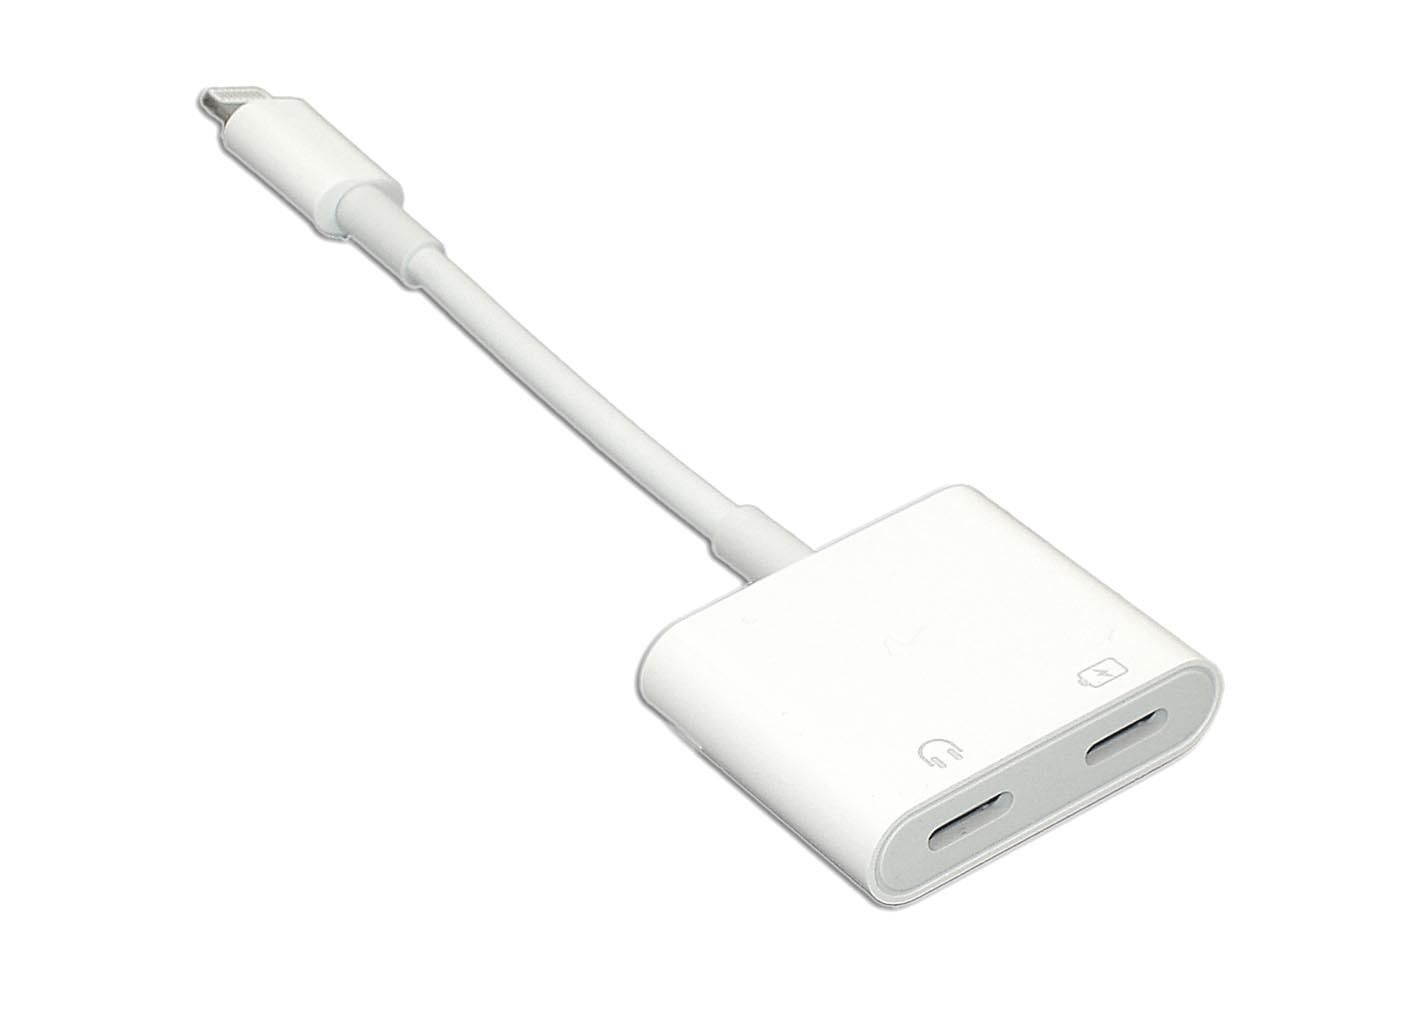 Айфон к телевизору через usb. Адаптер Apple md826zm/a. Переходник HDMI Lightning iphone. Переходник для IPOD, iphone, IPAD Apple Lightning Digital av Adapter (md826zm/a). Переходник Lightning HDMI для Apple.